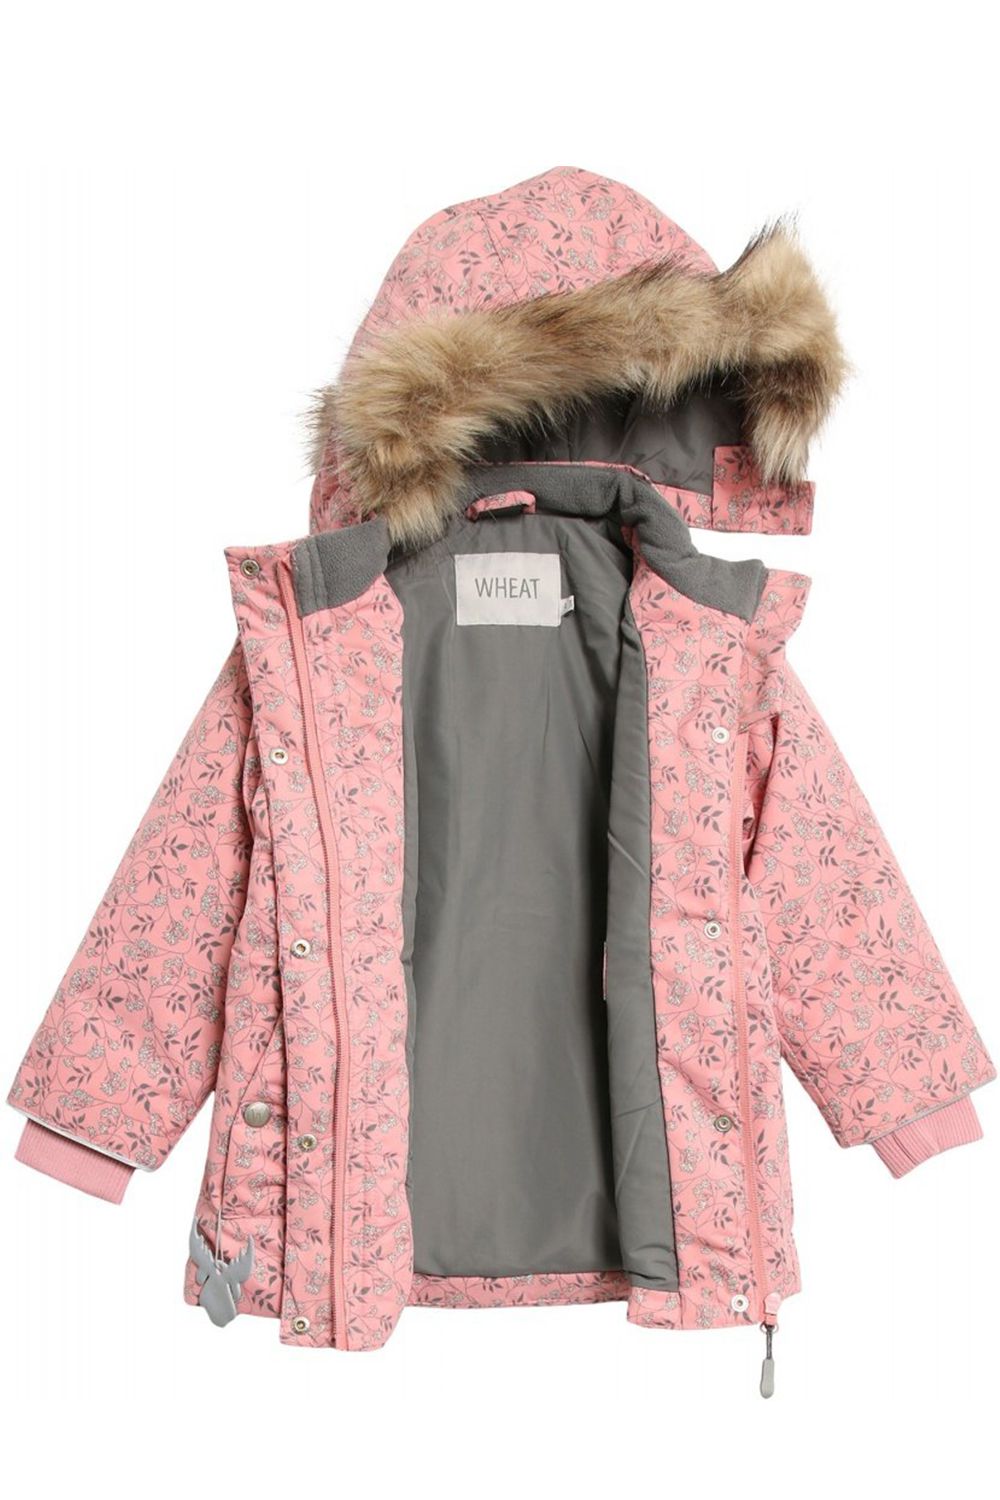 Куртка Wheat outerwear, размер 98, цвет розовый - фото 3